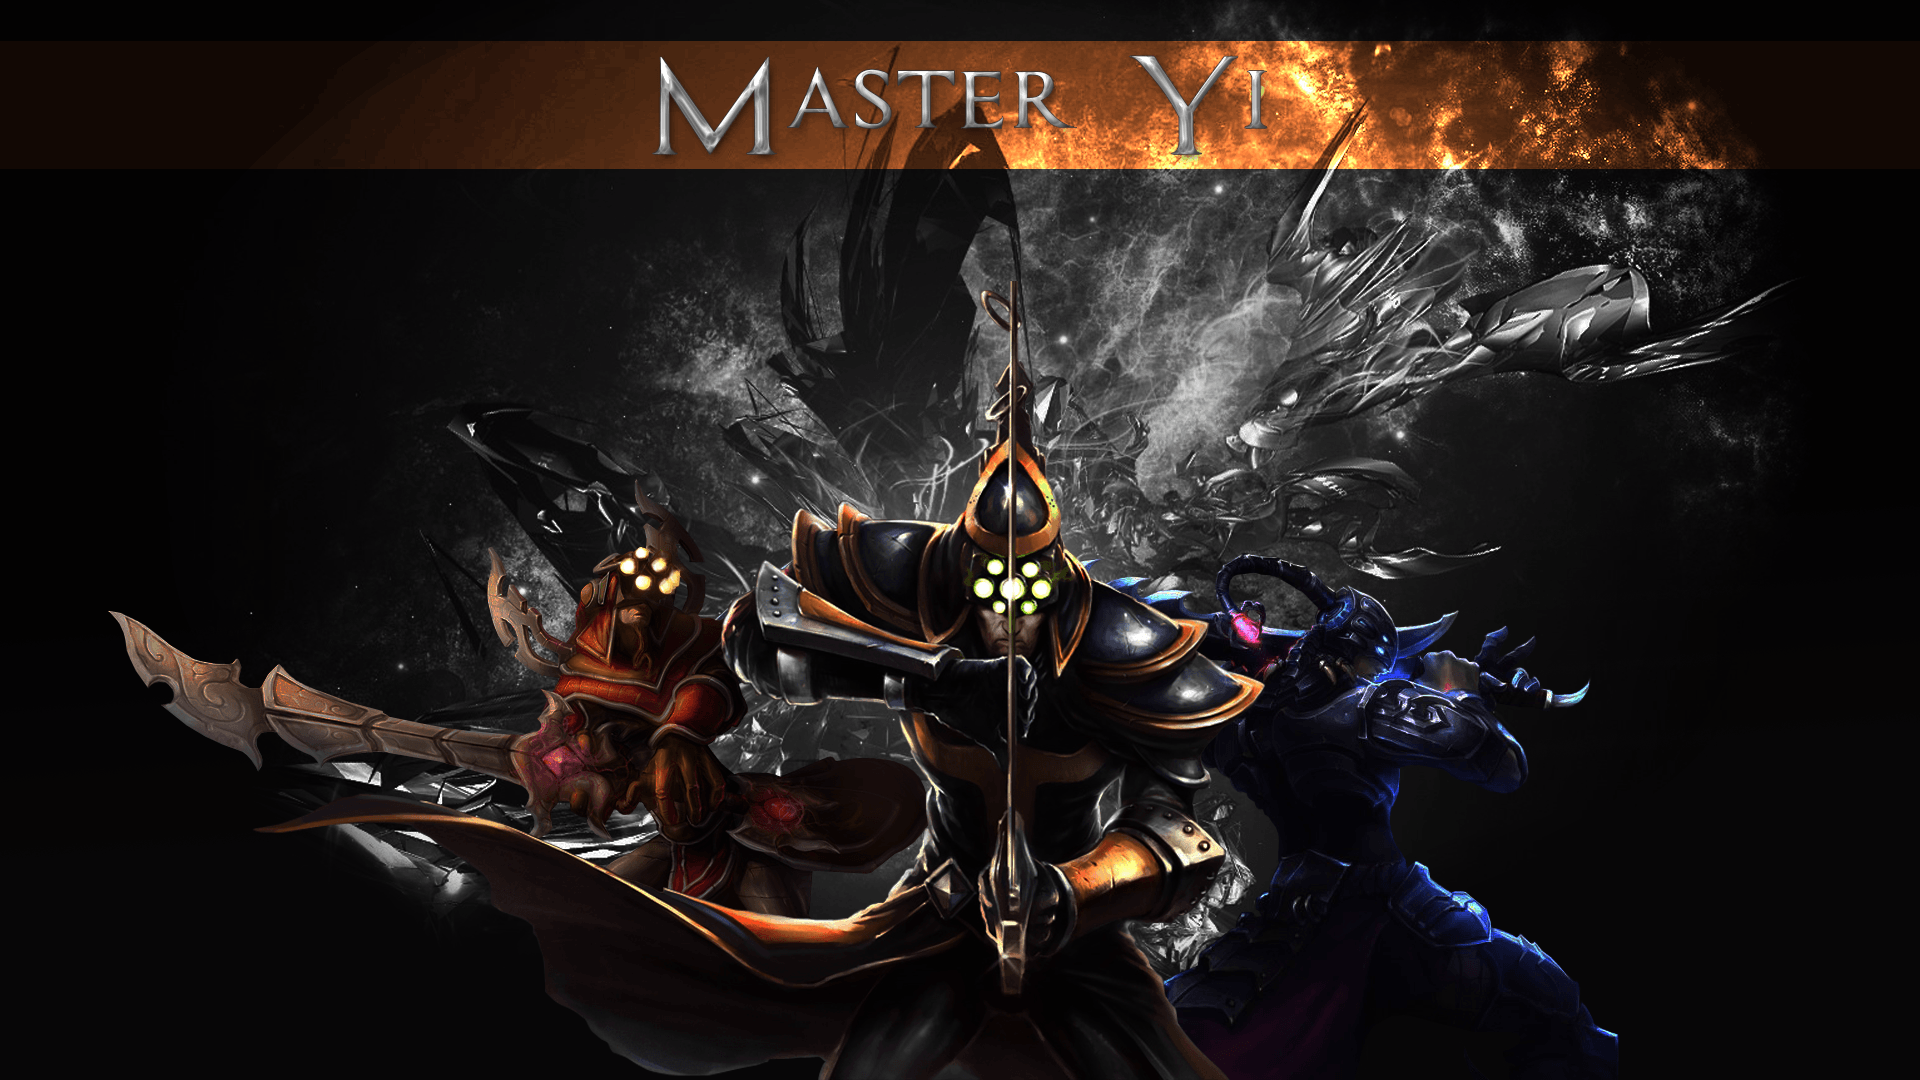 Master Yi, the Wuju Bladesman